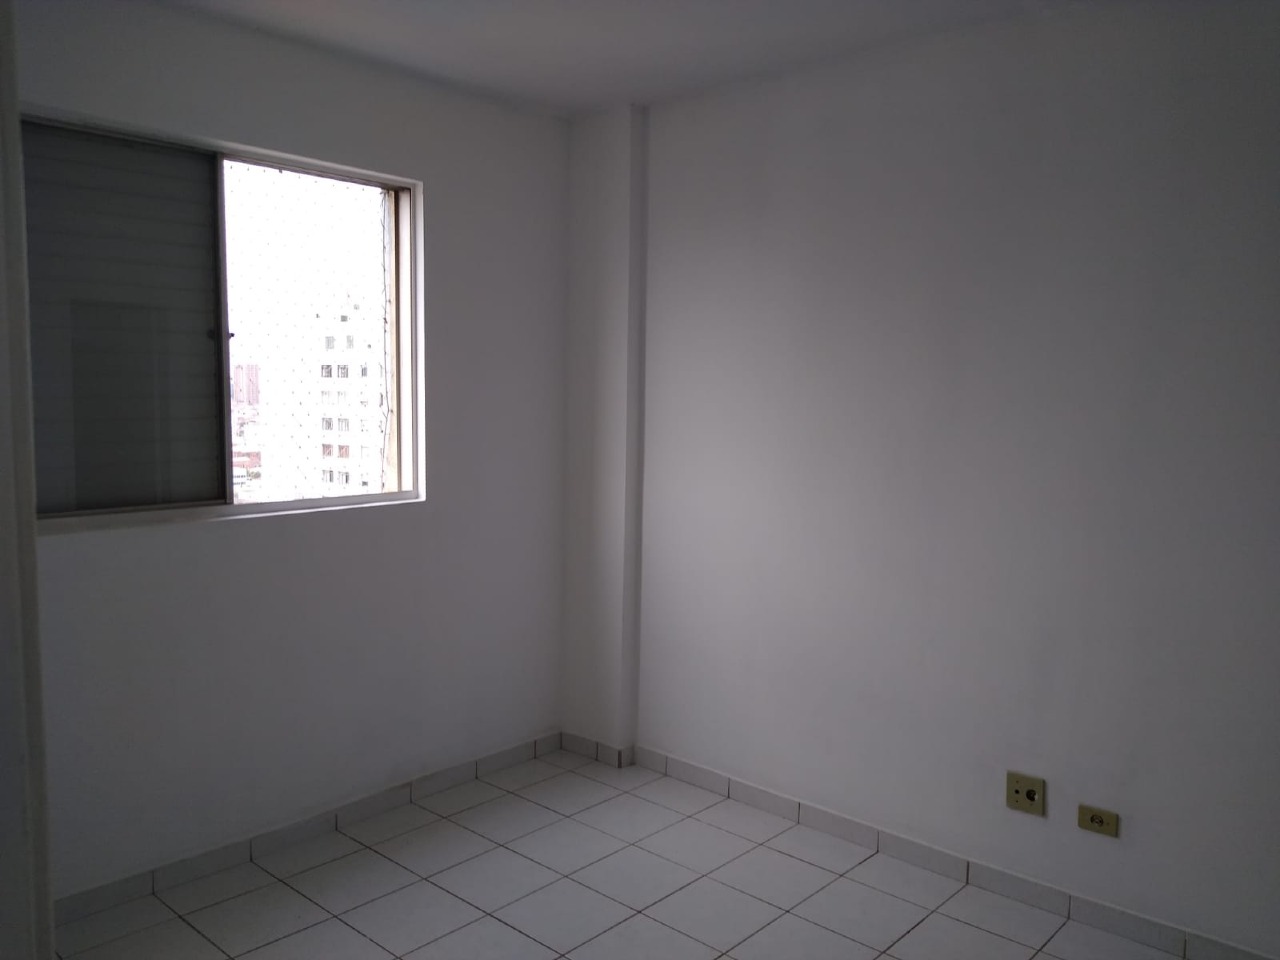 Apartamento para comprar, 1 quarto, no bairro Centro em Piracicaba - SP